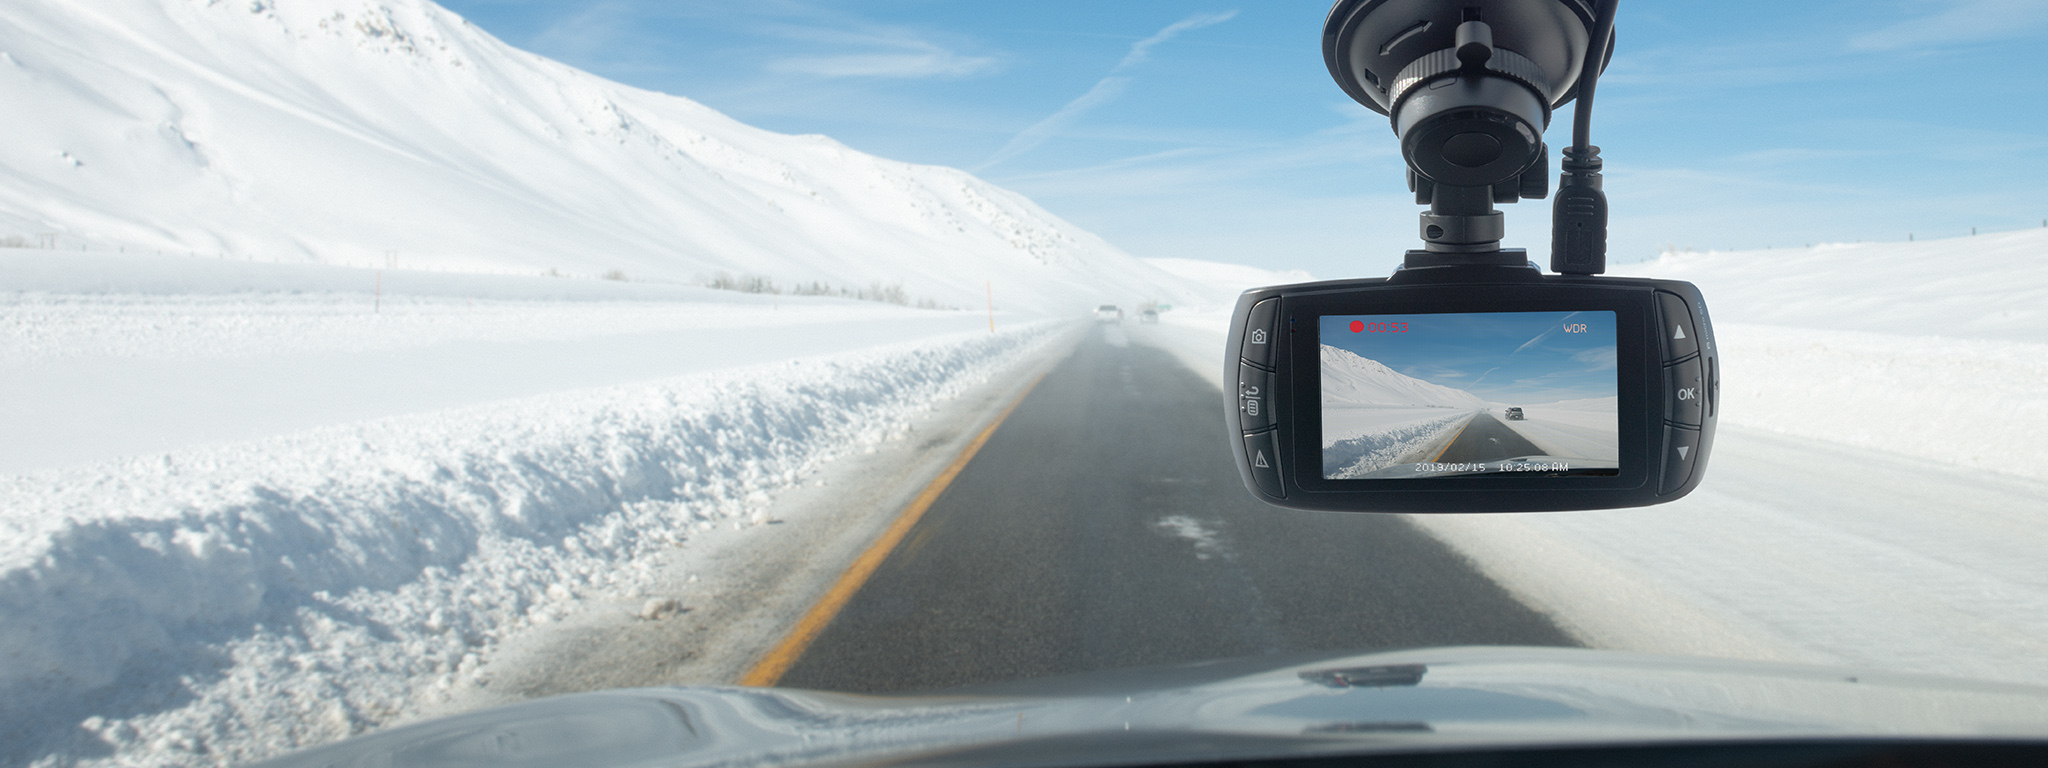 雪景中一辆车行驶在畅通的路上，挡风玻璃后安装着行车记录仪